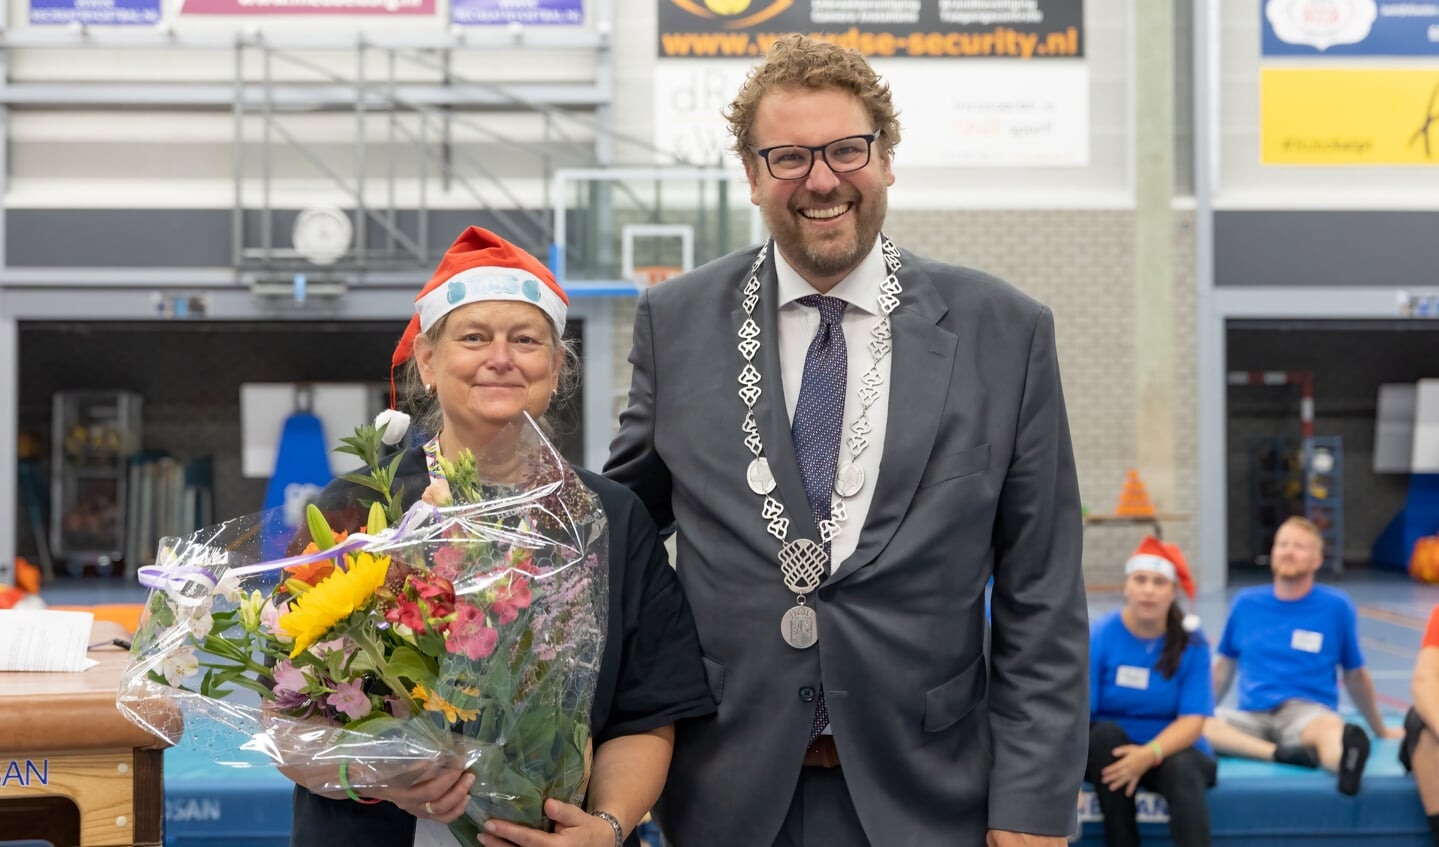 Na de lovende woorden door de nieuwe burgemeester van Dijk en Waard, Maarten Poorter, nam ze de Gouden Reiger dankbaar in ontvangst. 